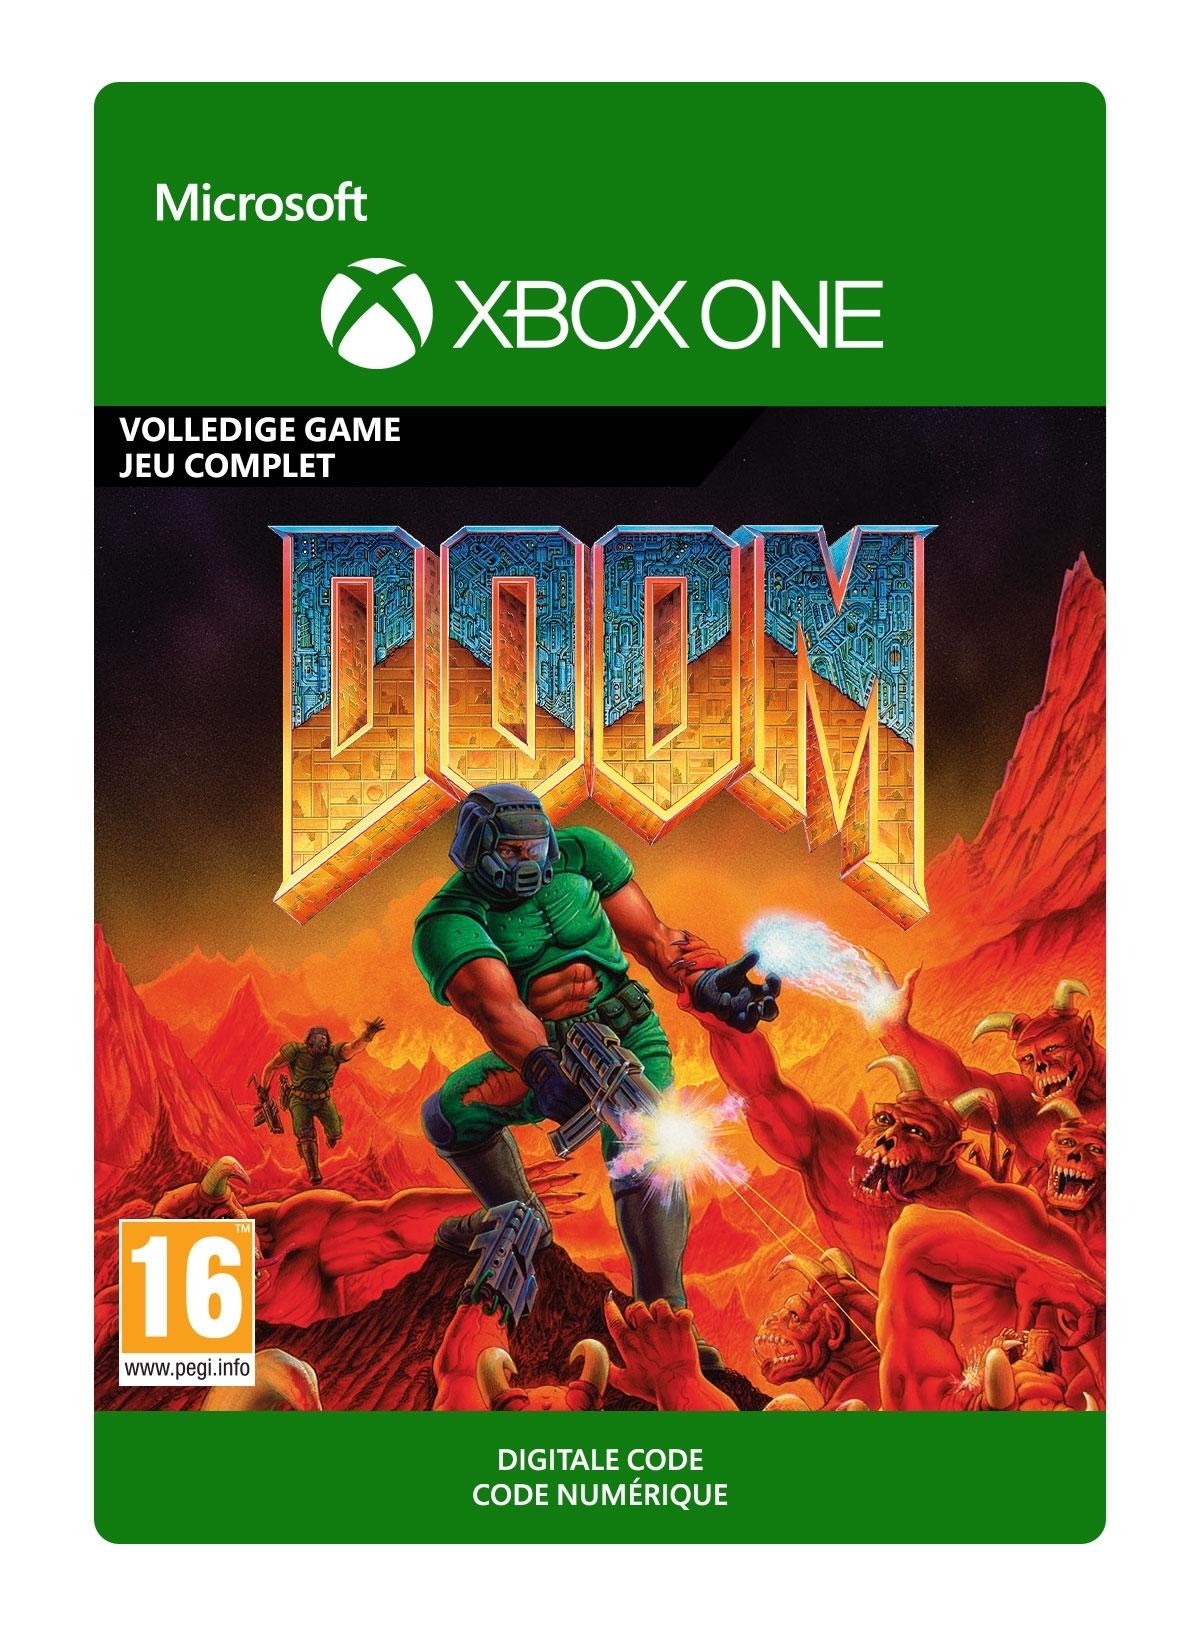 DOOM I (1993) - Xbox One - Game | G3Q-00803 (7f8bd0ae-8f45-b042-85a6-e015749bfcd5)